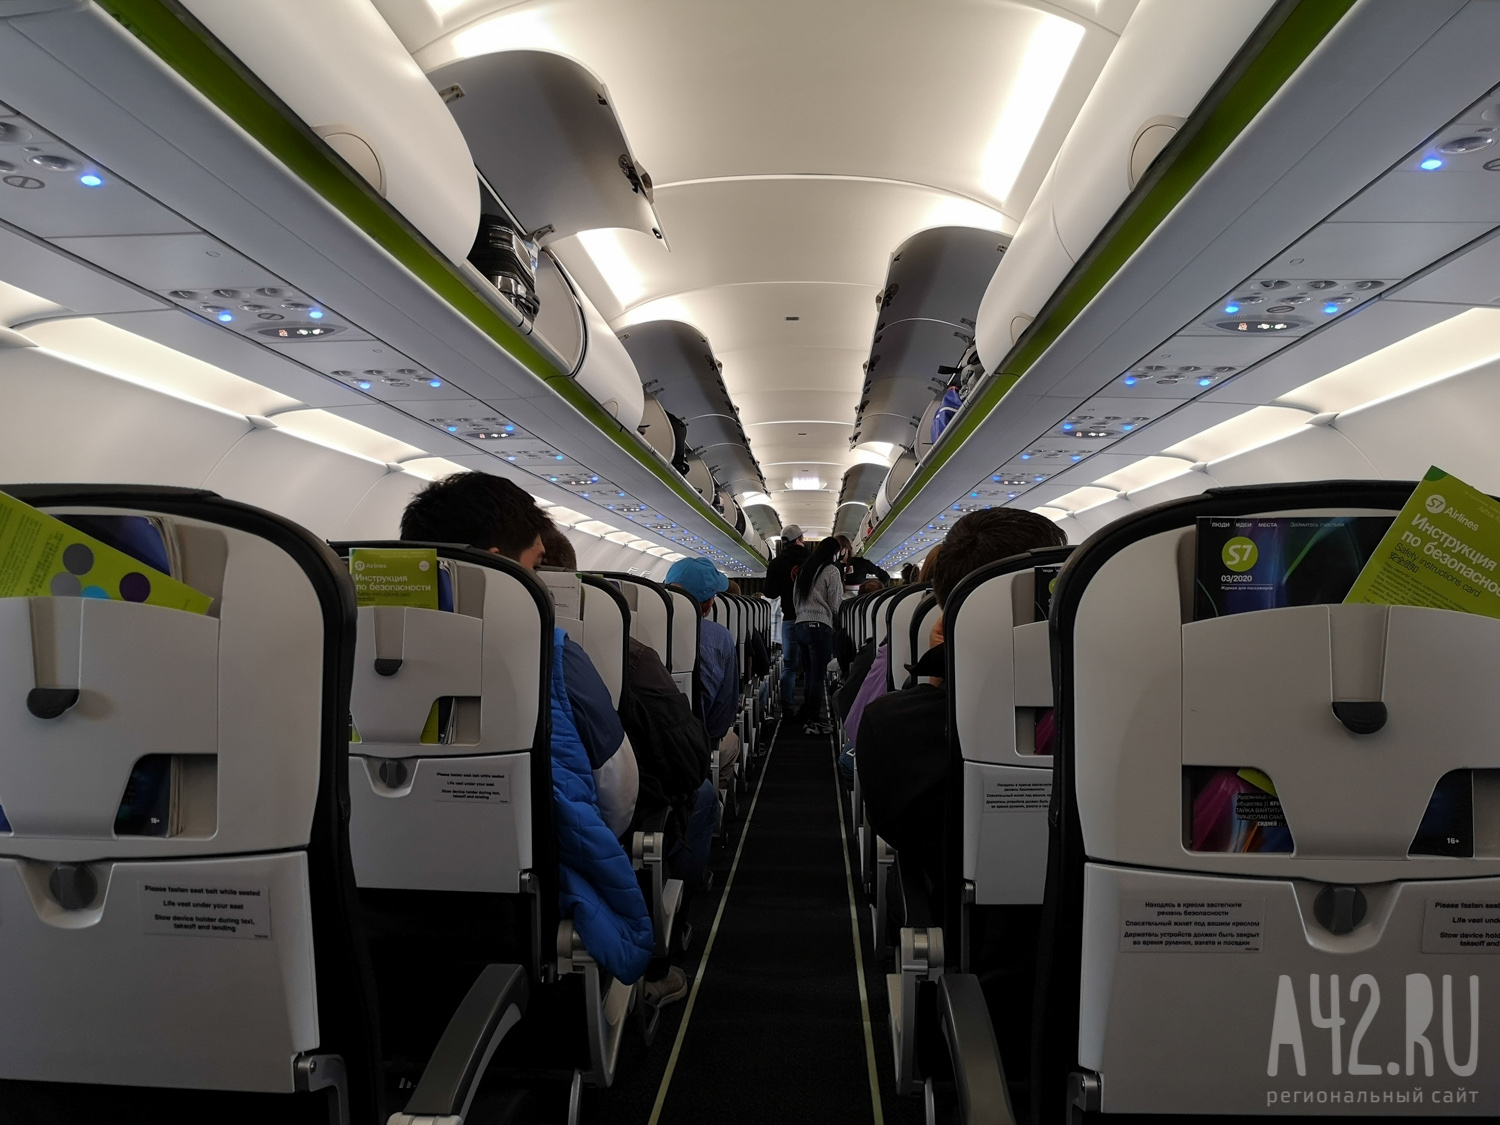 Авиакомпанию S7 оштрафовали на 30 тысяч рублей за нарушение прав пассажиров